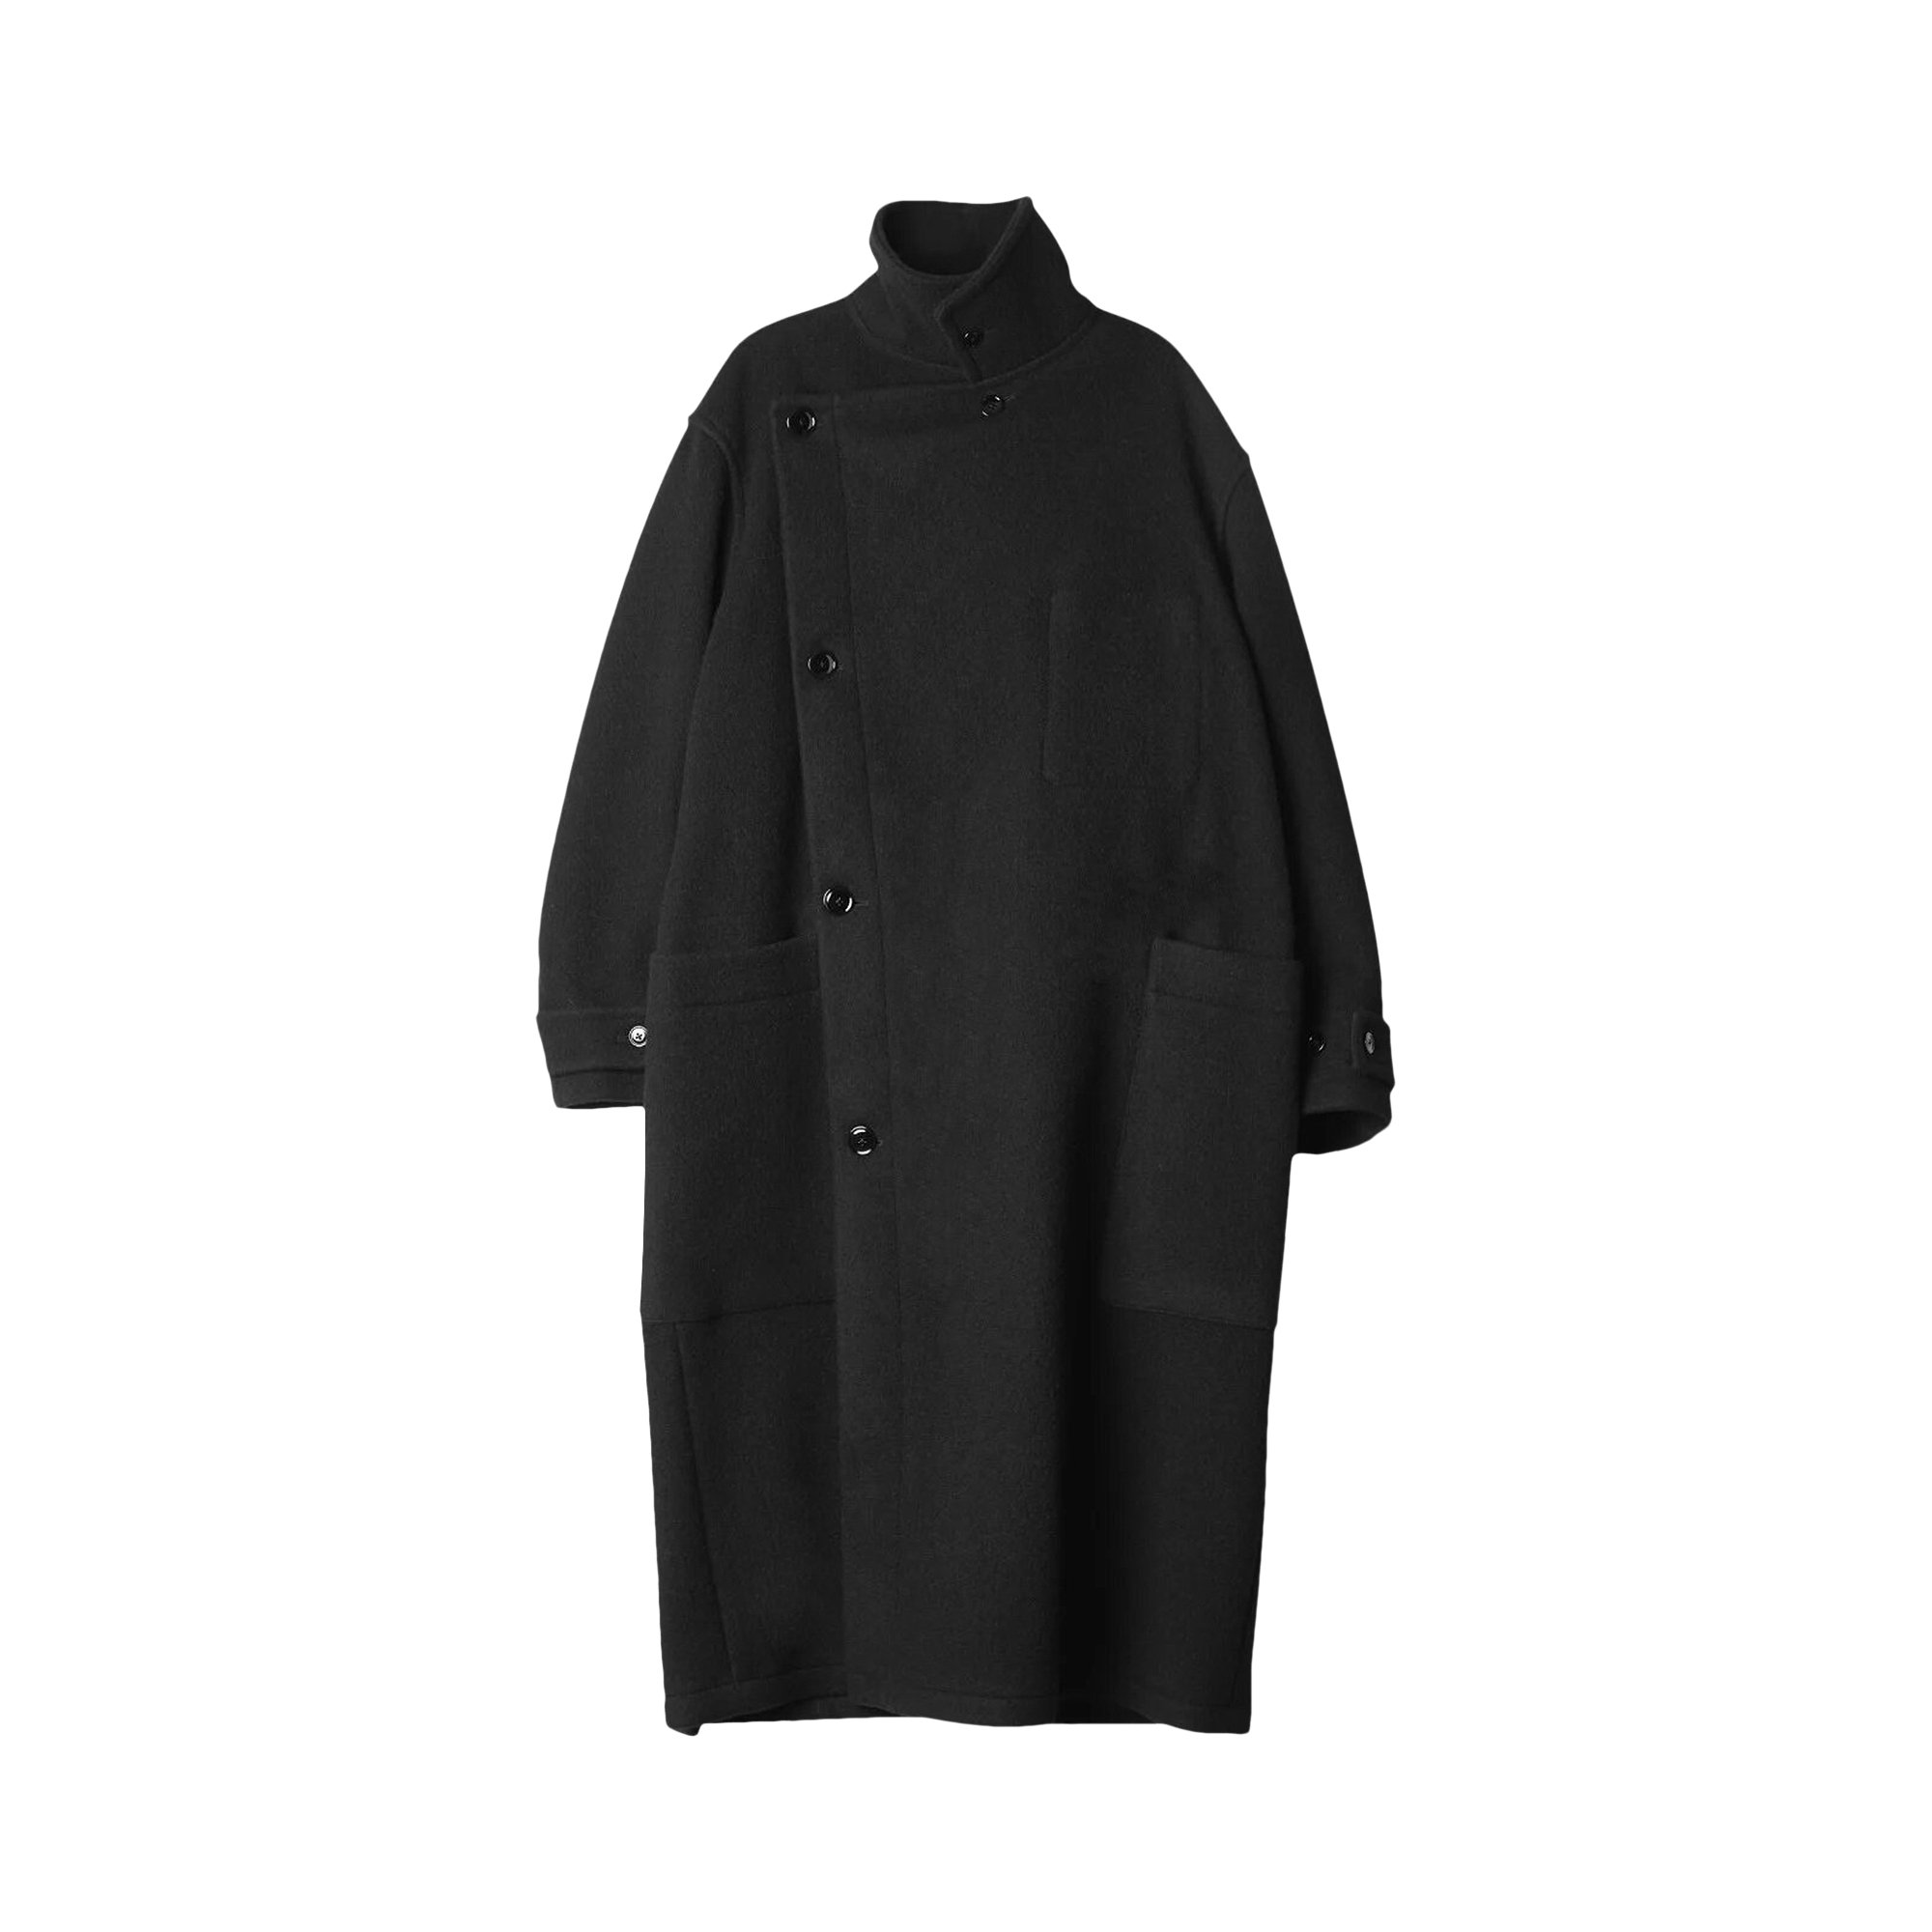 Buy Lemaire Wrap Coat 'Black' - CO184 LF615 BK999 | GOAT